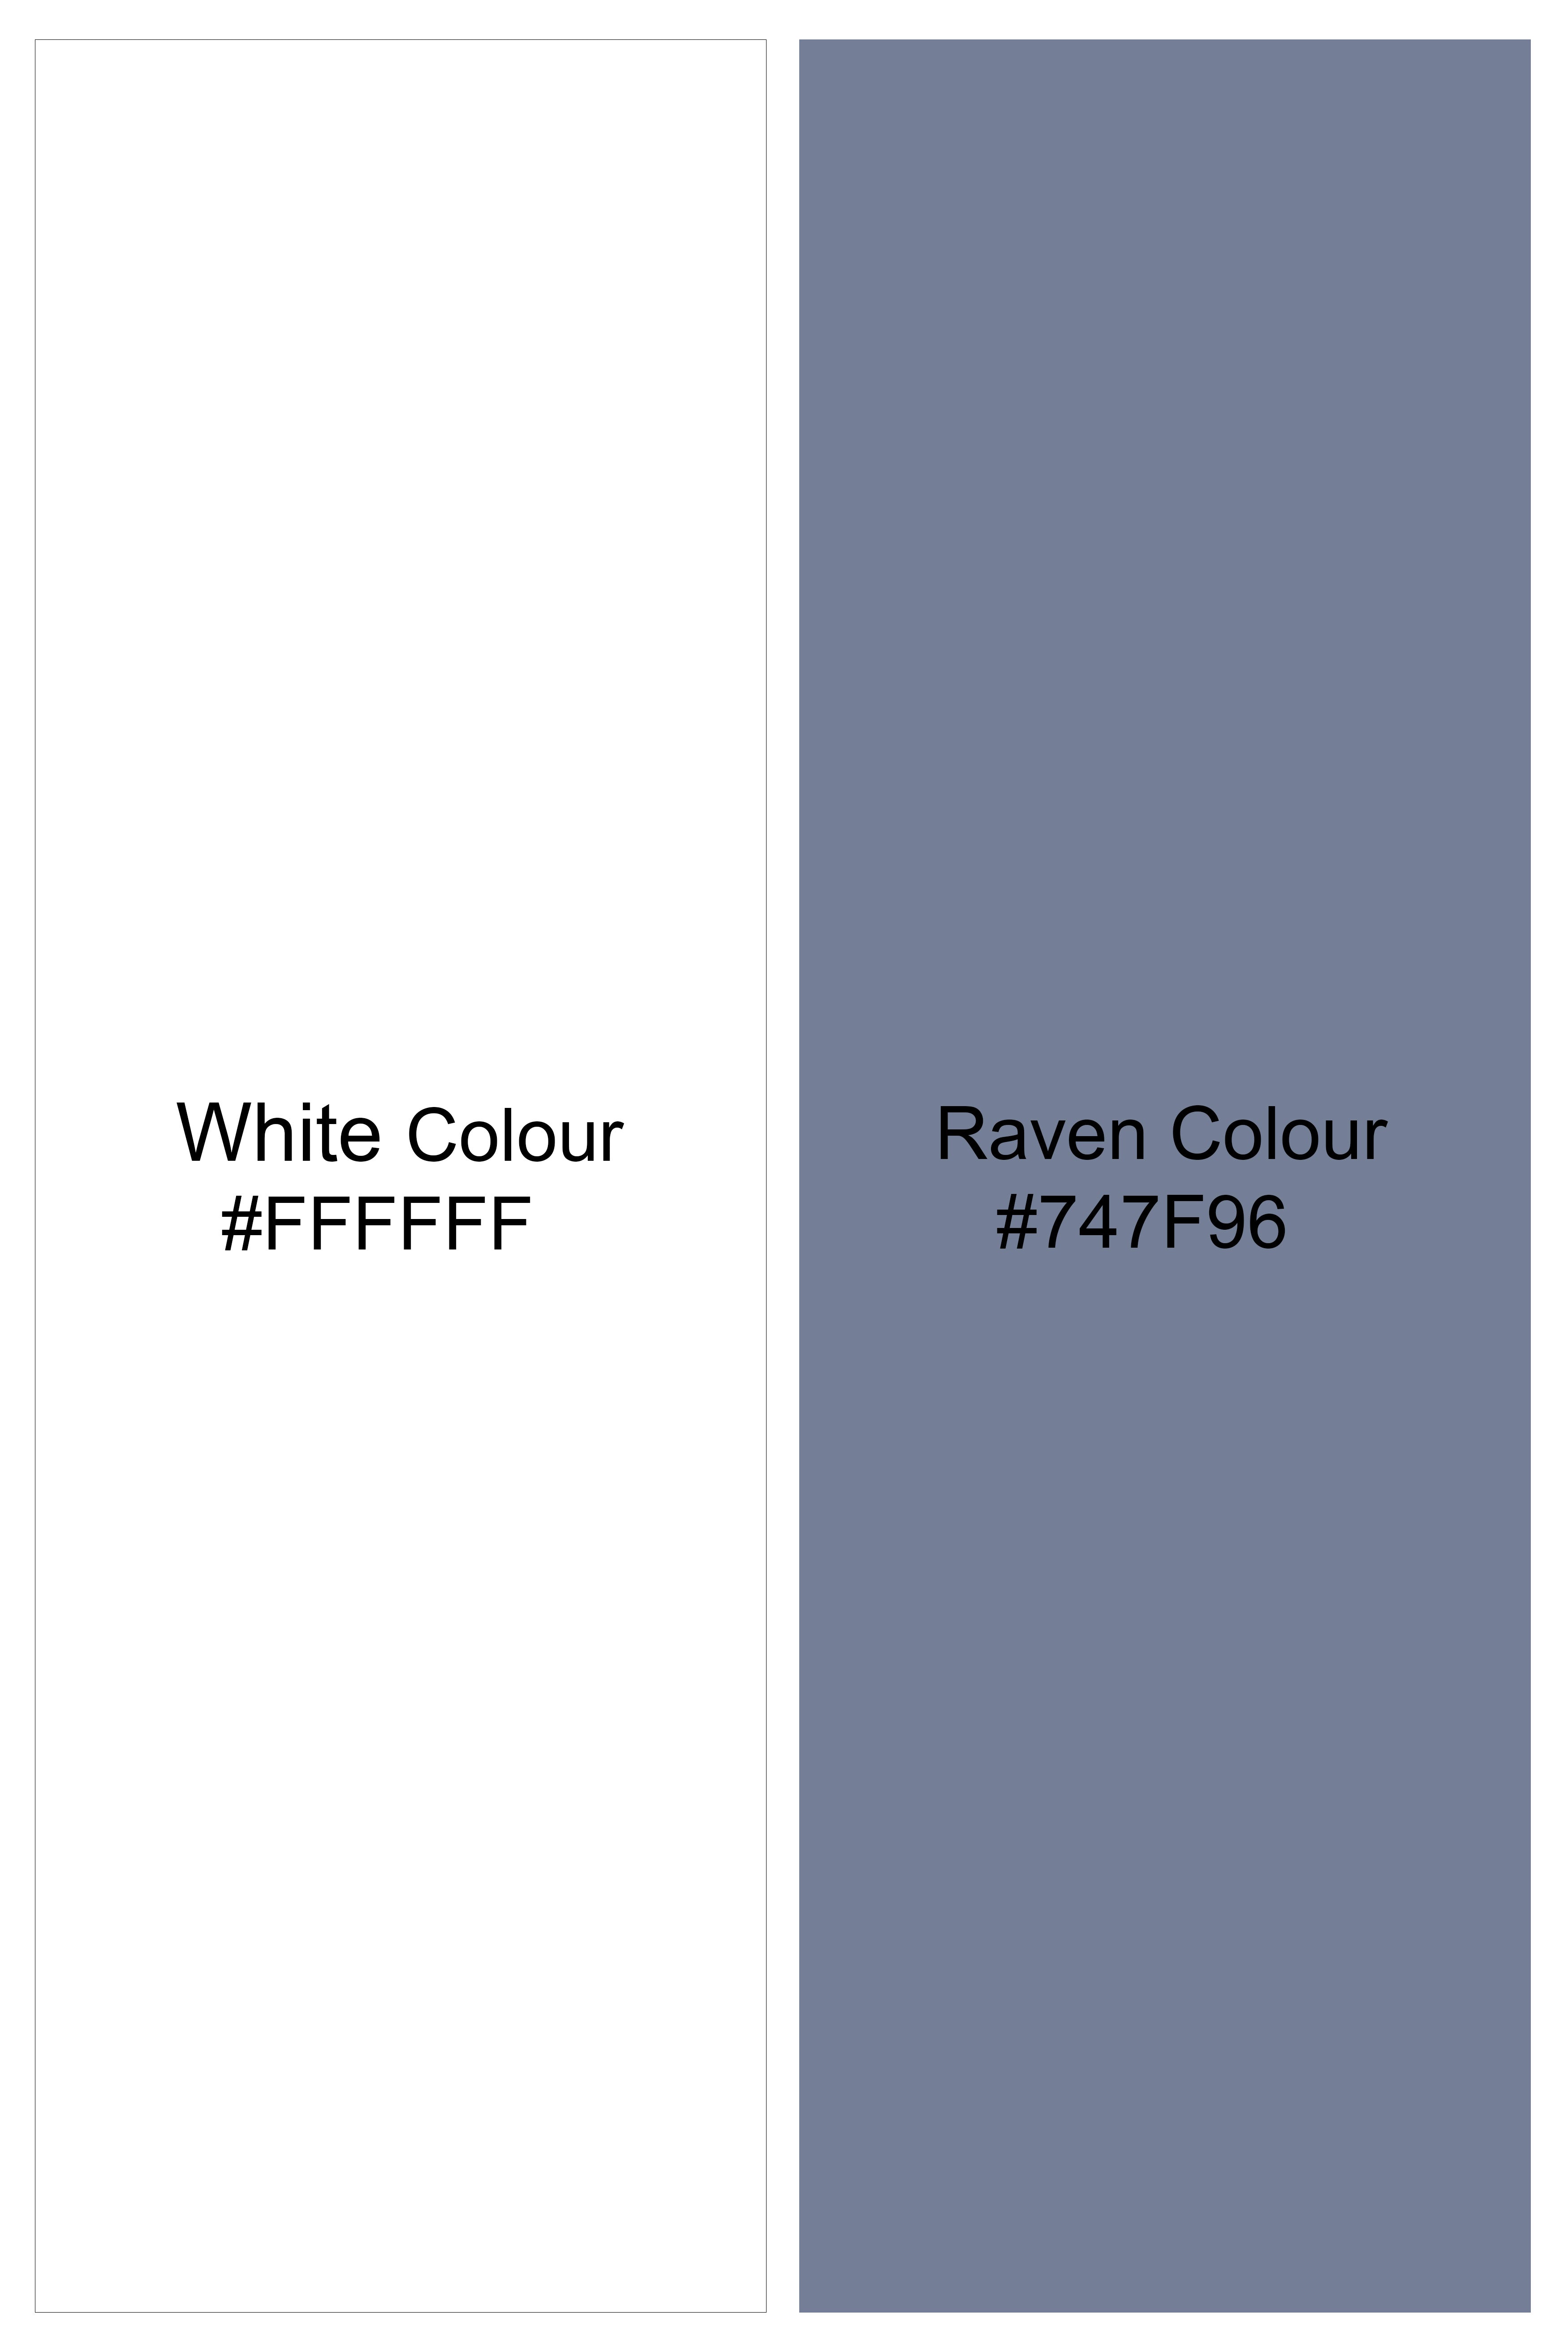 Bright White with Raven Gray Printed Subtle Sheen Super Soft Premium Cotton Shorts SR364-28, SR364-30, SR364-32, SR364-34, SR364-36, SR364-38, SR364-40, SR364-42, SR364-44